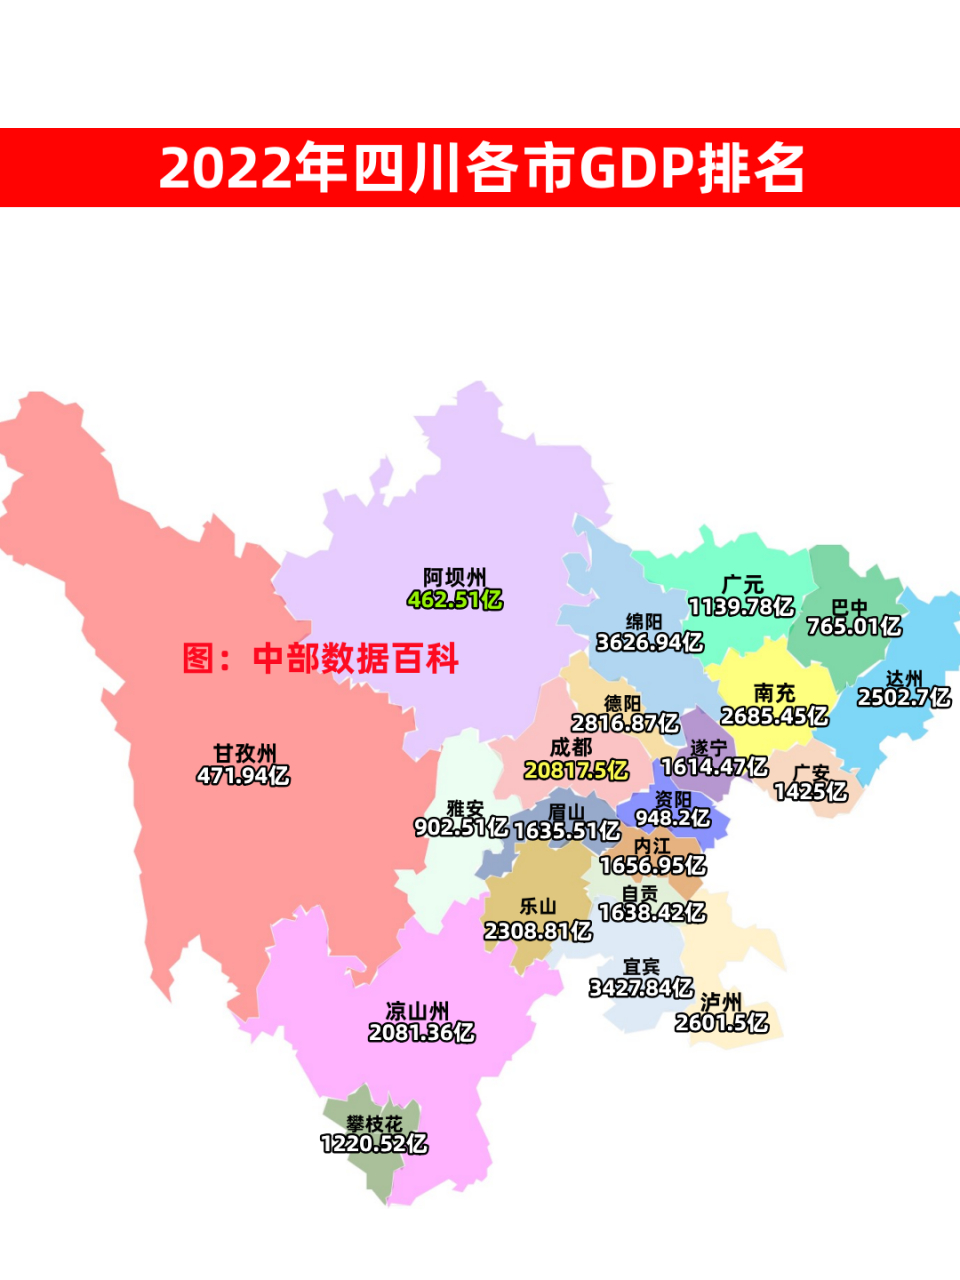 2022年四川各市gdp排名,成都以20817